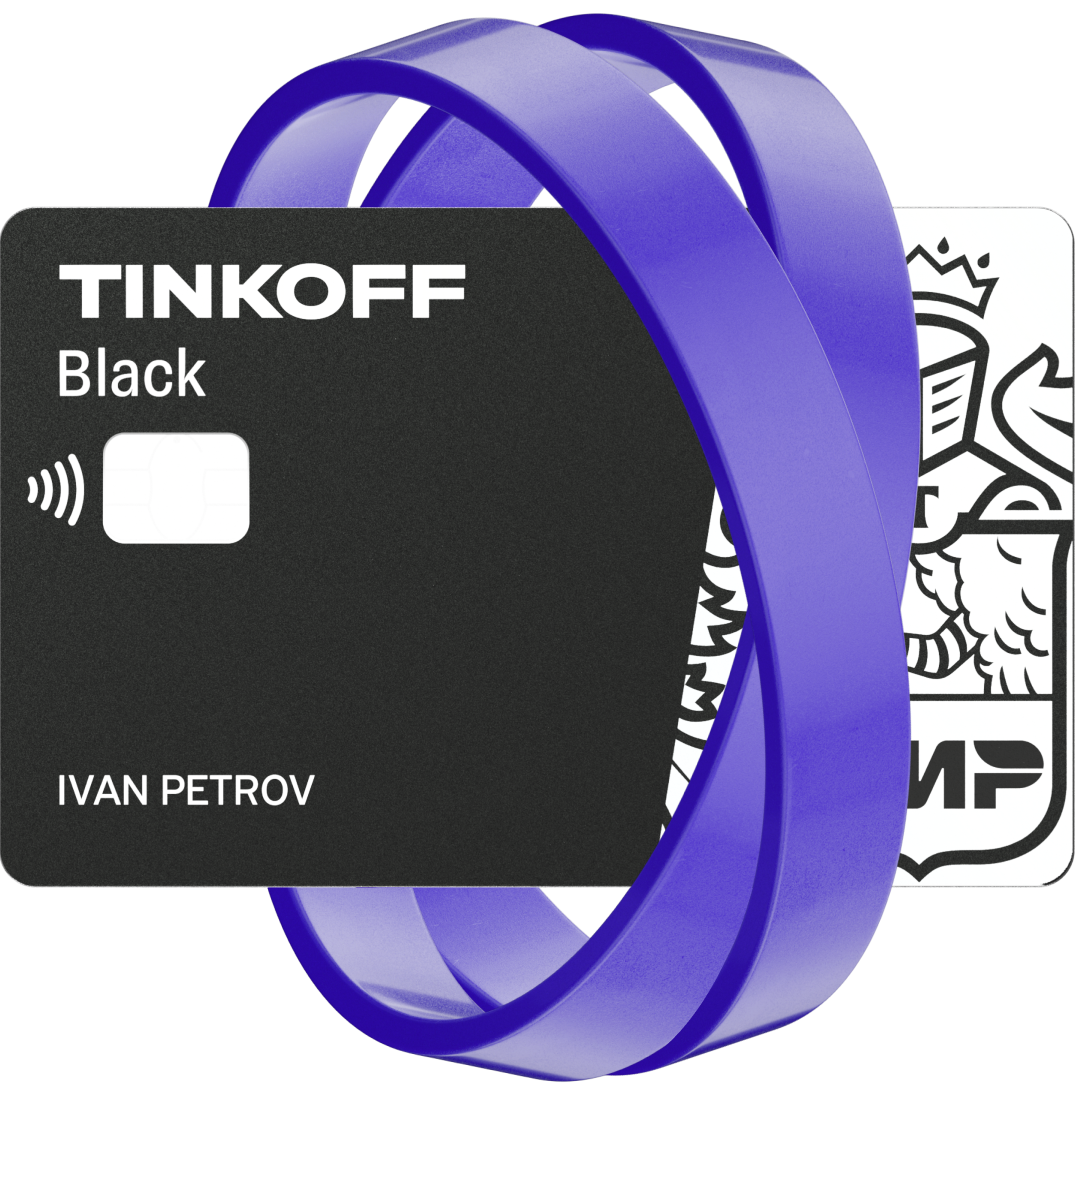 Легкий способ экономить: 4 возможности Tinkoff Black, чтобы держать себя в руках